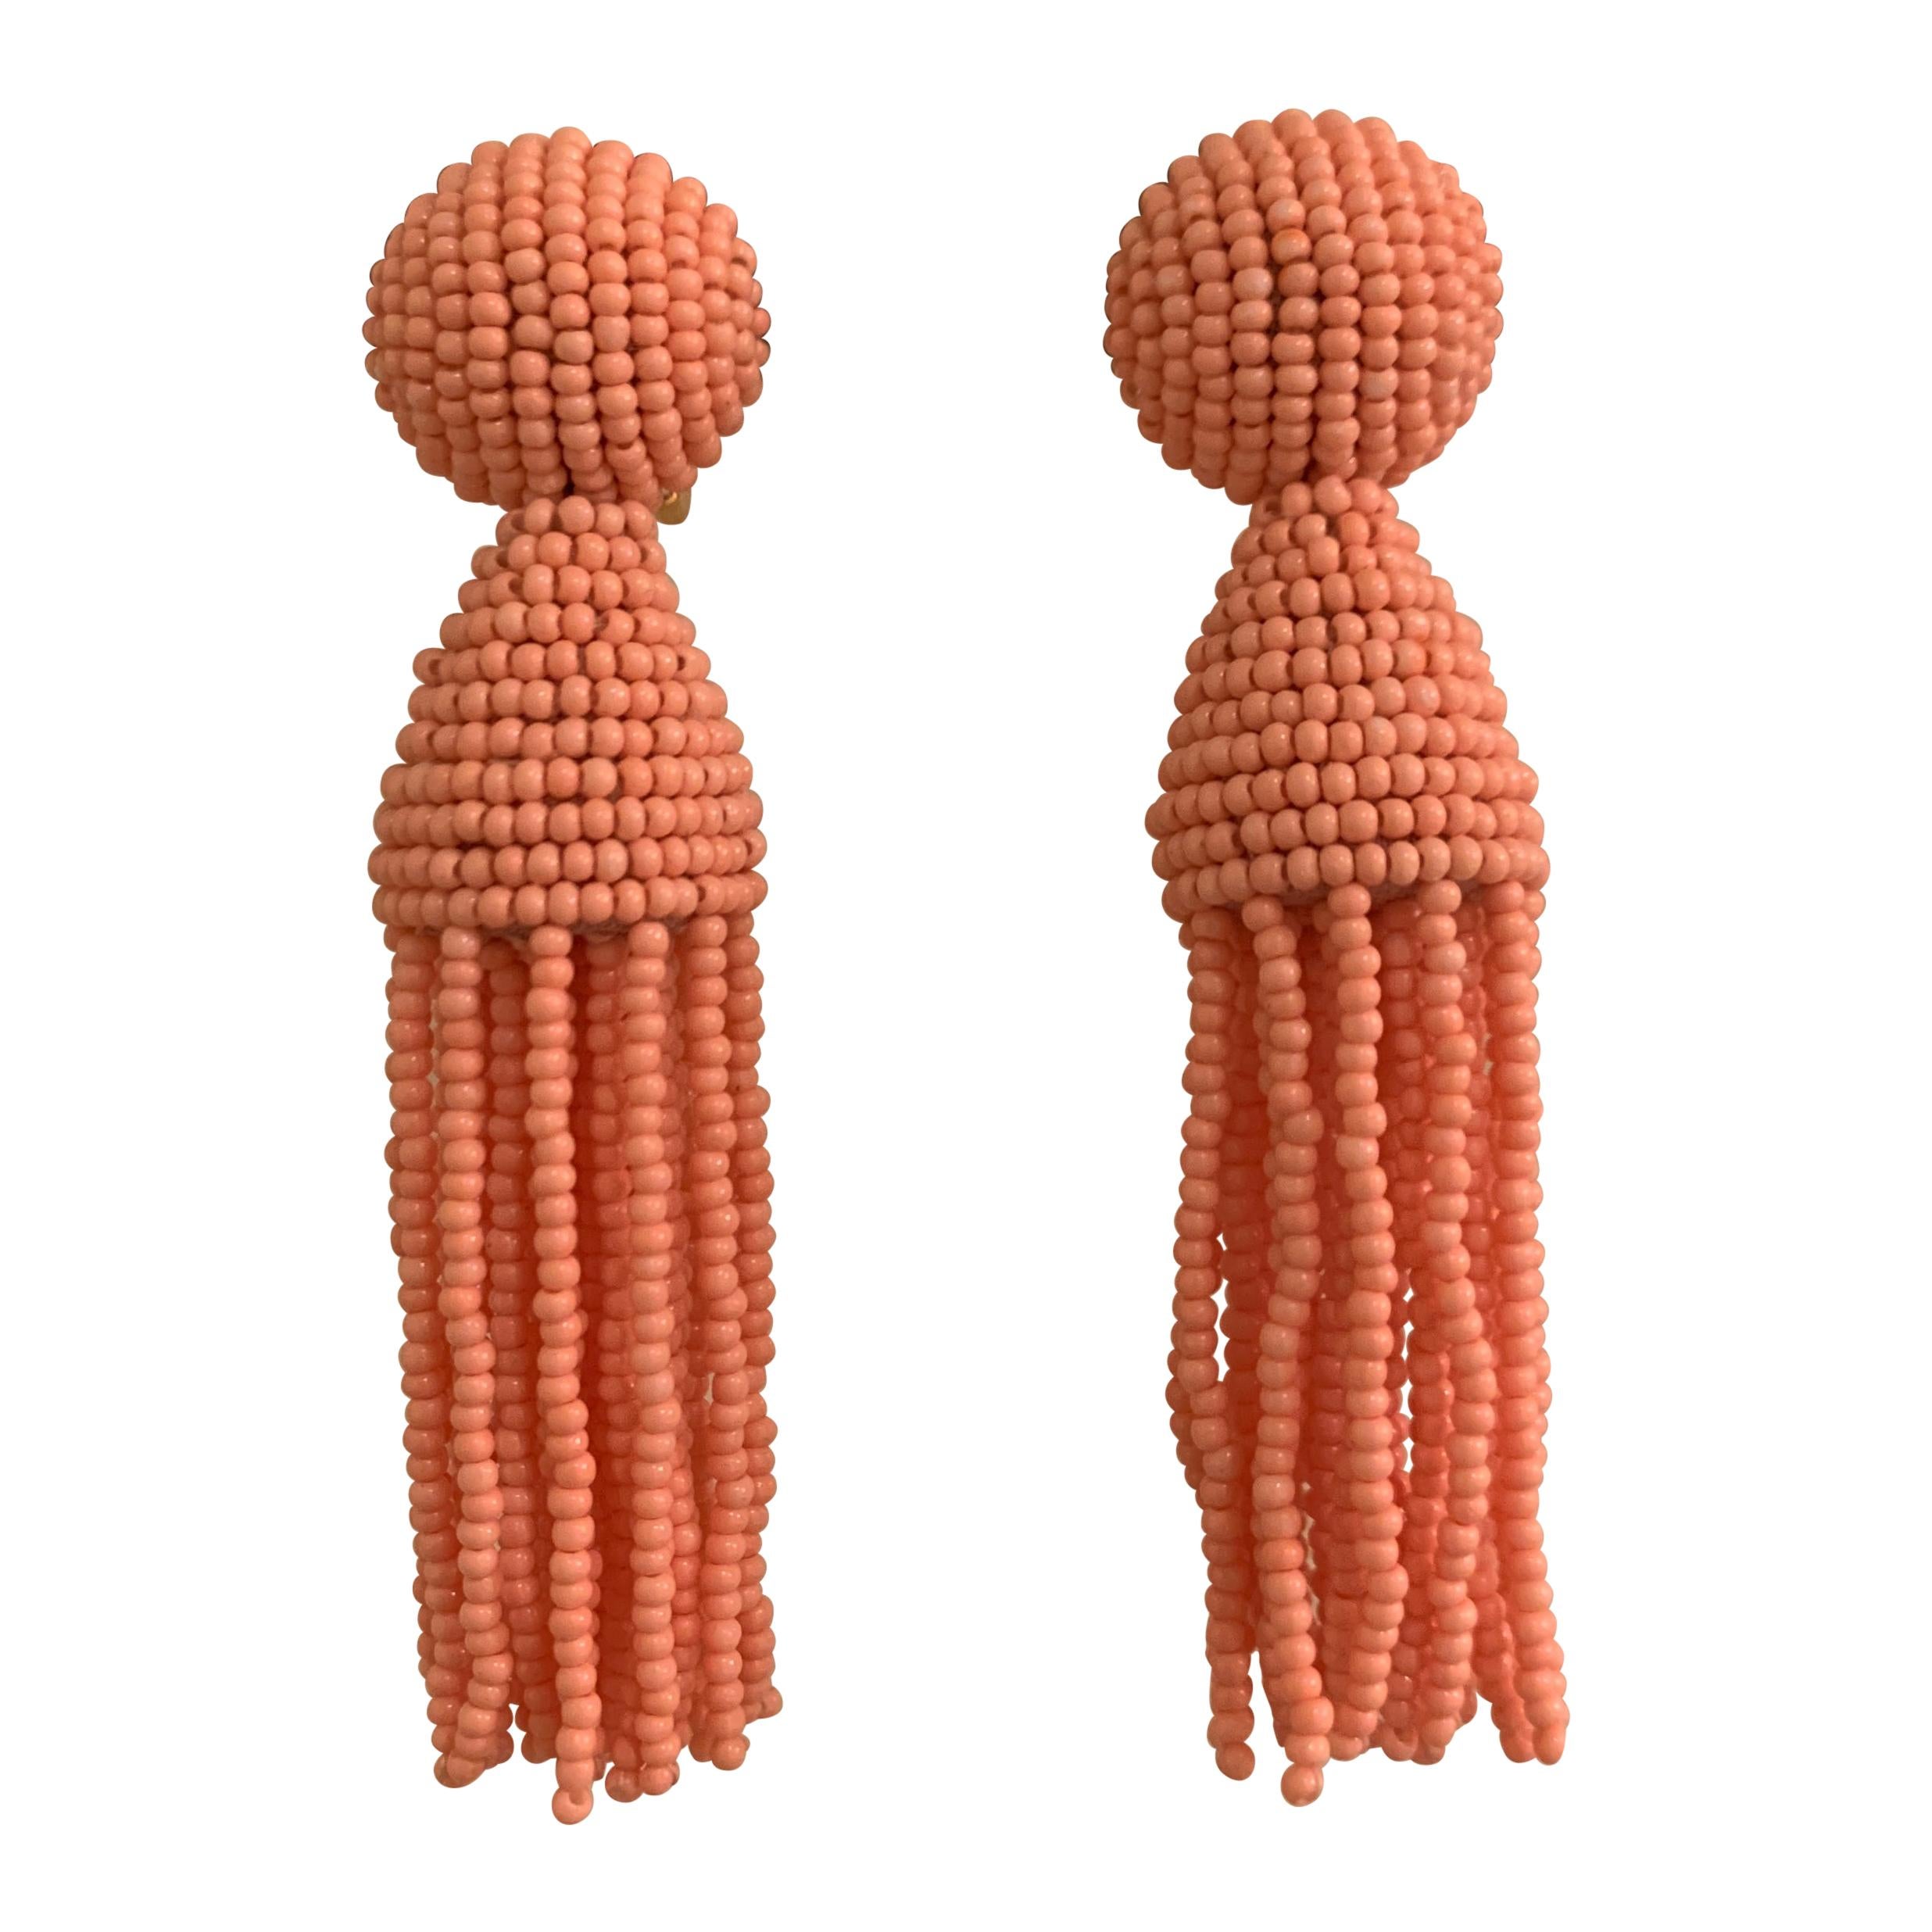 New Oscar de la Renta Peach Pink Beaded Tassel Earrings Clip On